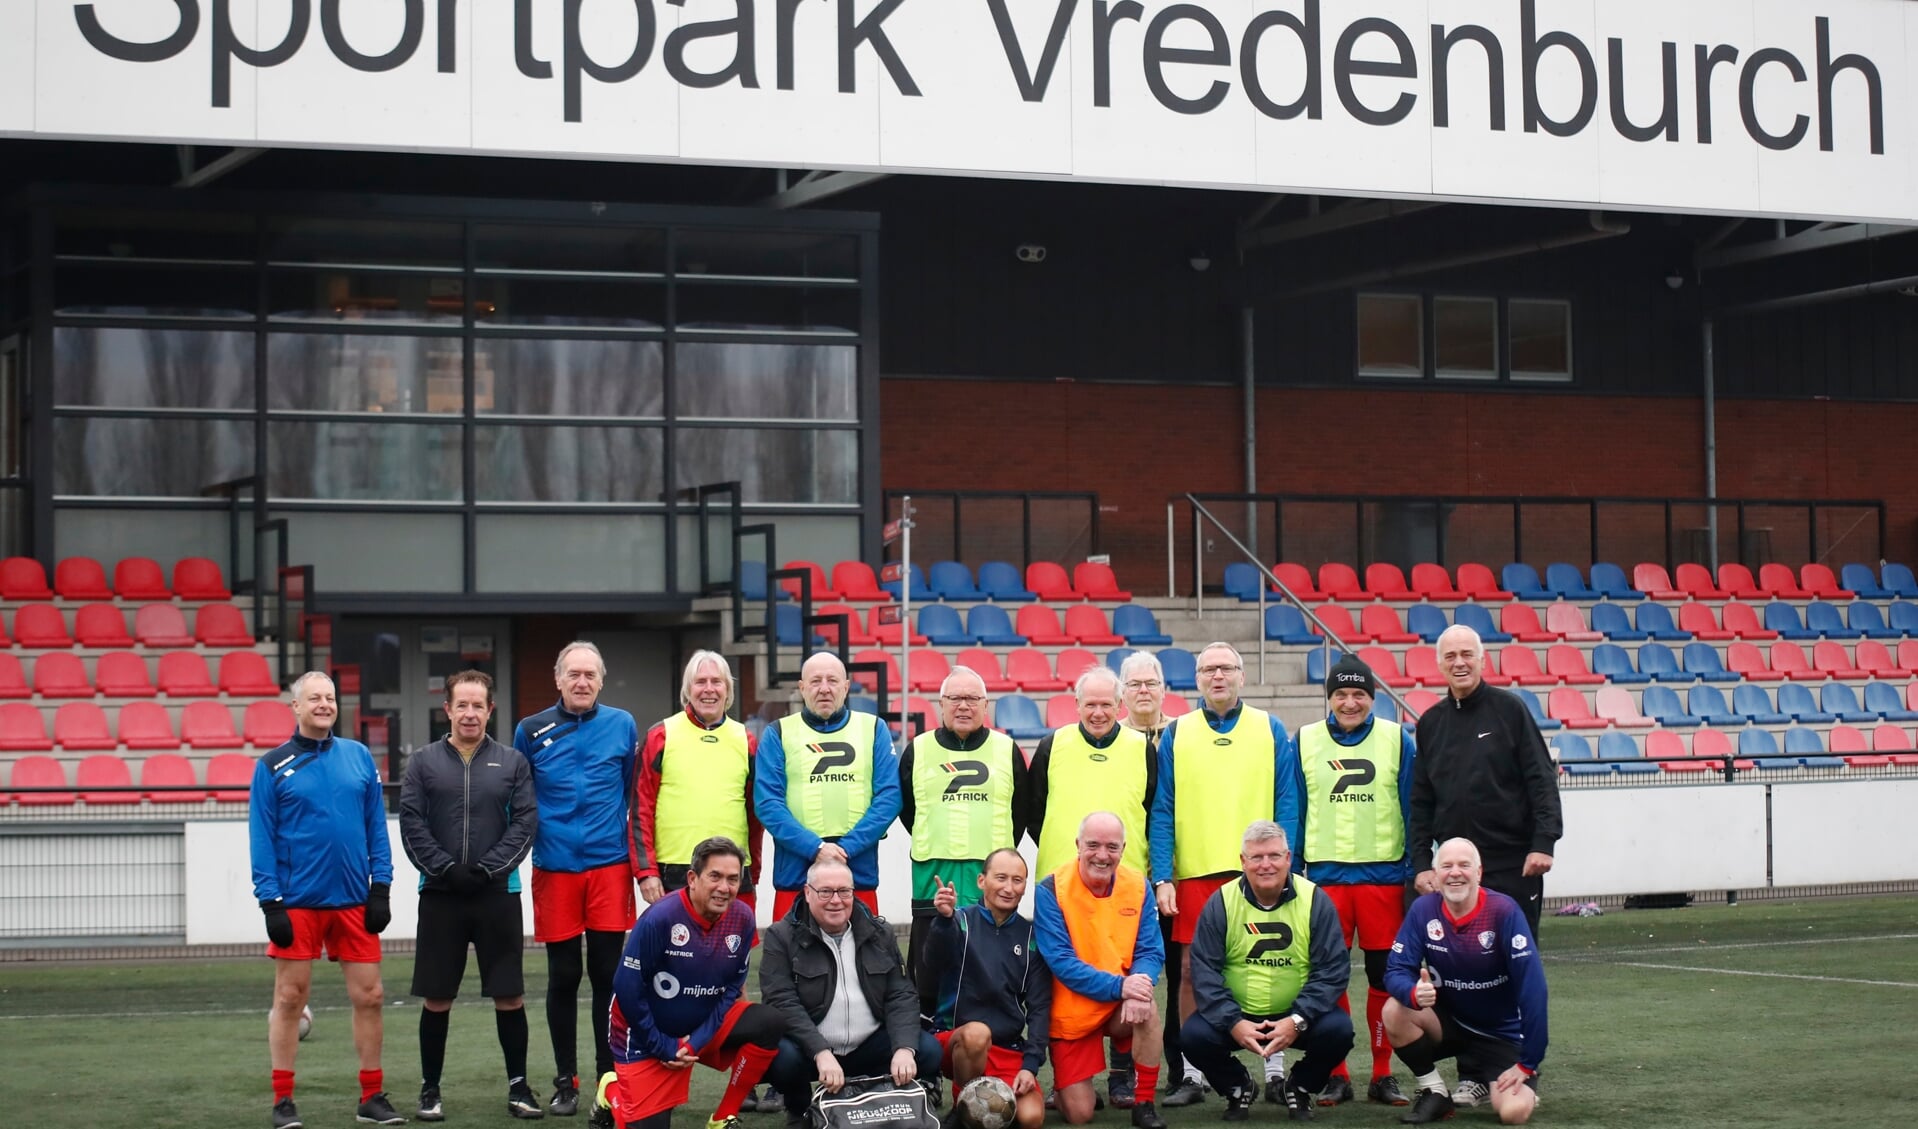 De deelnemers aan het Walking Football bij Vredenbruch, zijn voornamelijk oud-voetballers die bezig willen blijven met hun sport.  